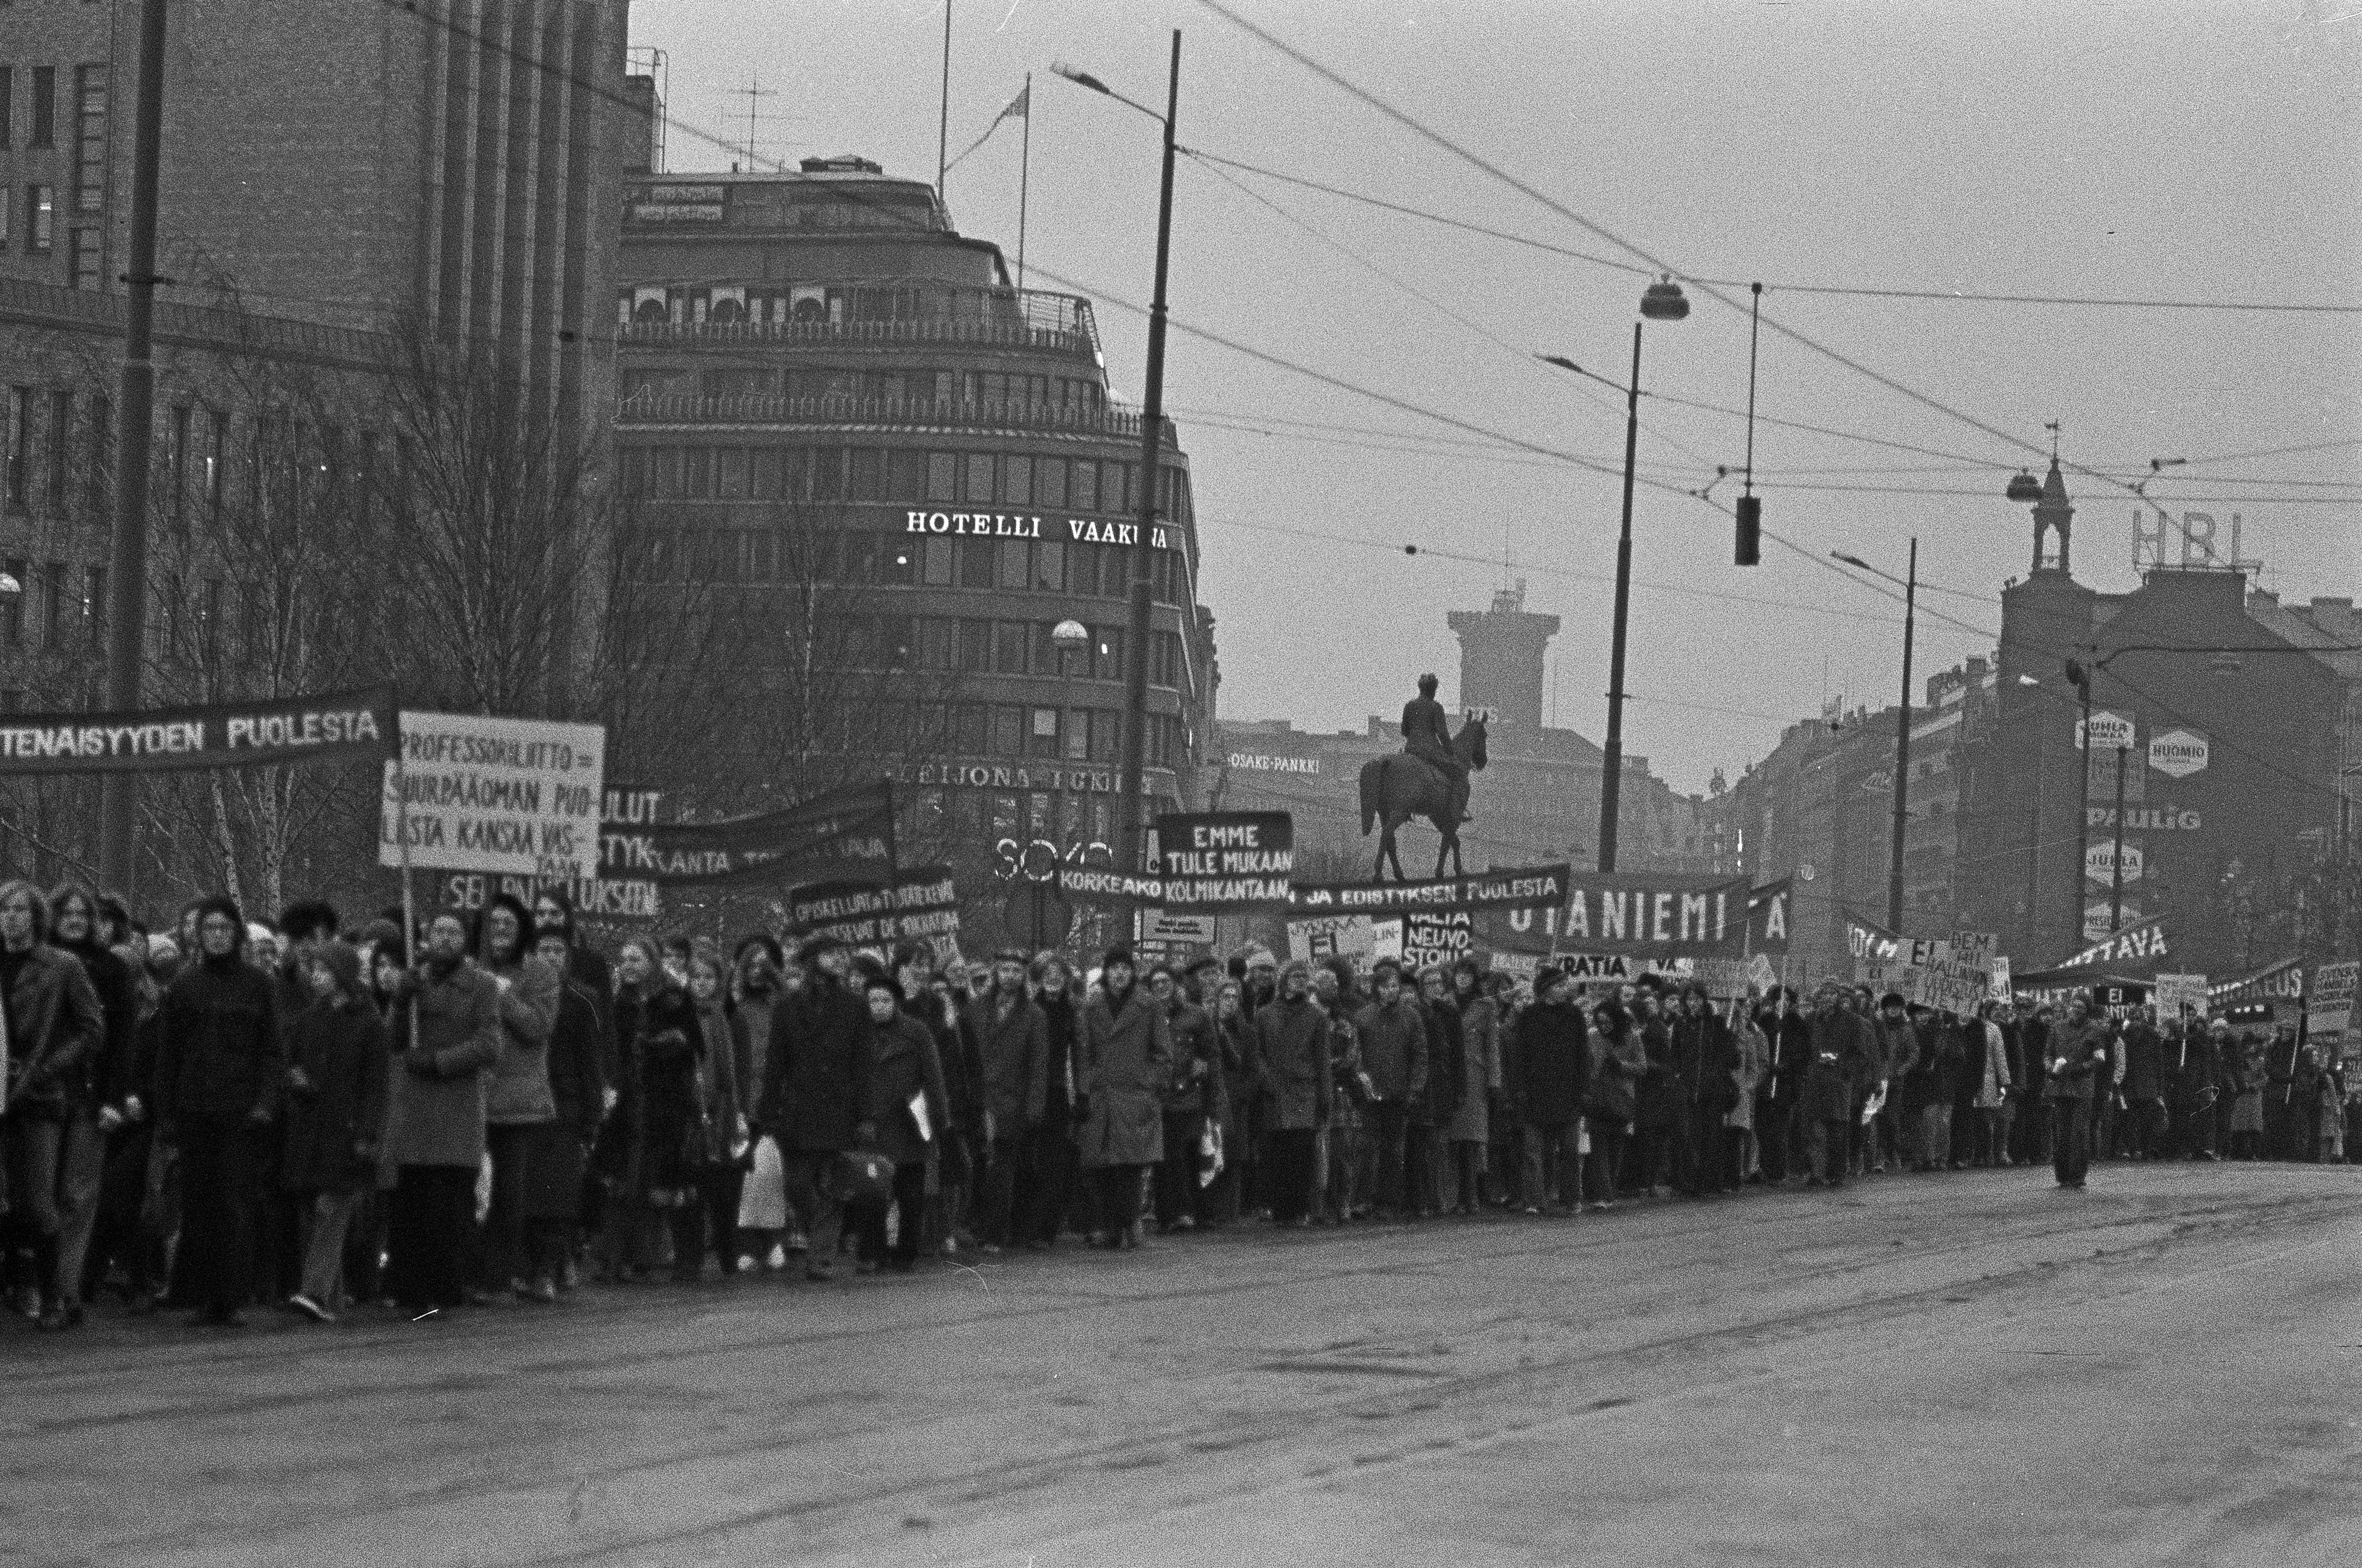 Mielenosoitus, jolla opiskelijaliike vaati yleistä ja yhtäläistä äänioikeutta (yyä) yliopistojen ja korkeakoulujen hallintoelinten valintaperusteeksi. Mielenosoittajien kulkue Mannerheimintiellä Mannerheiminaukion kohdalla.